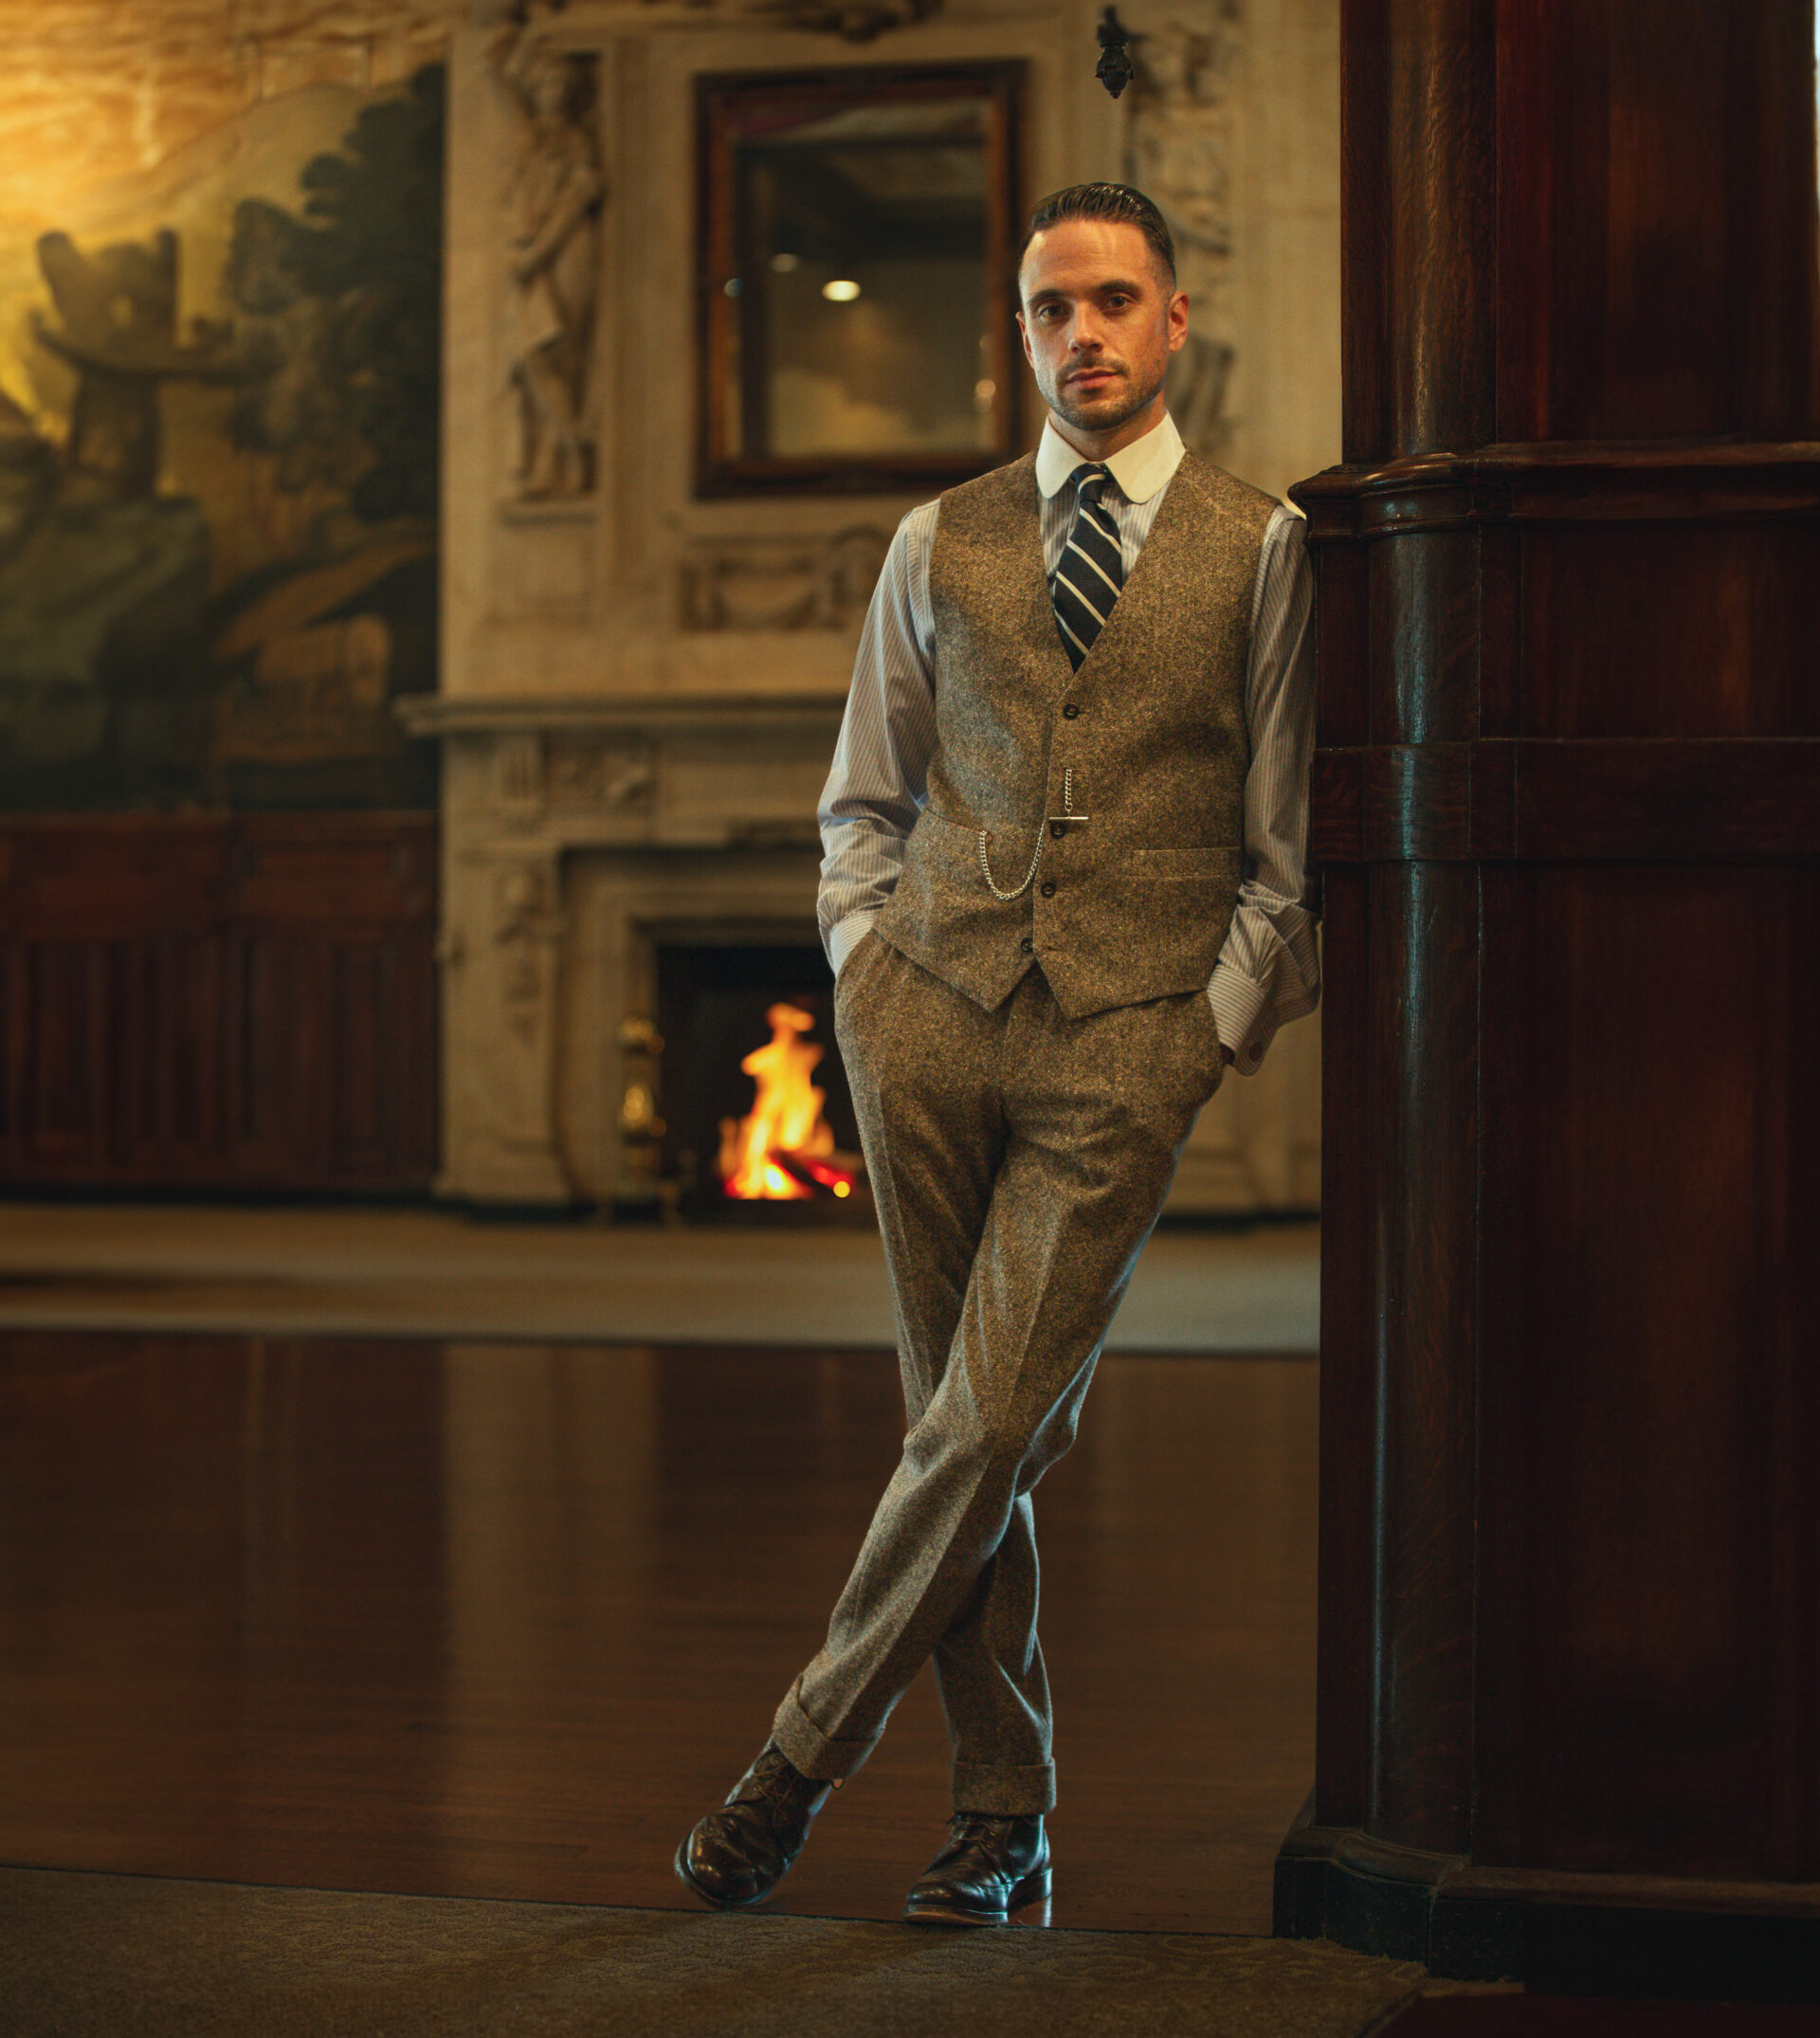 The Brown Tweed Suit, He Spoke Style